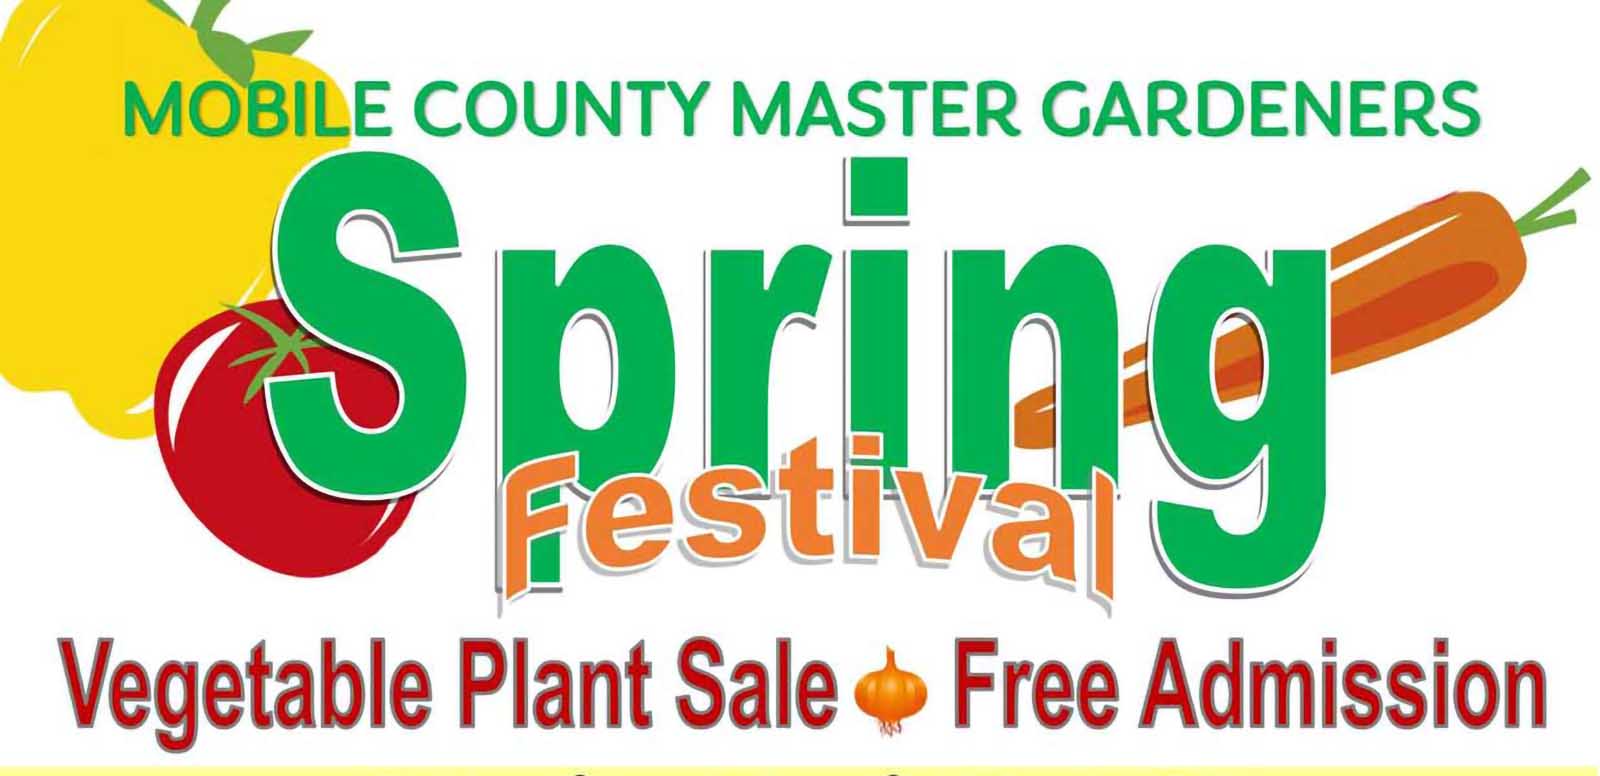 Master Gardeners Spring Festival Announced